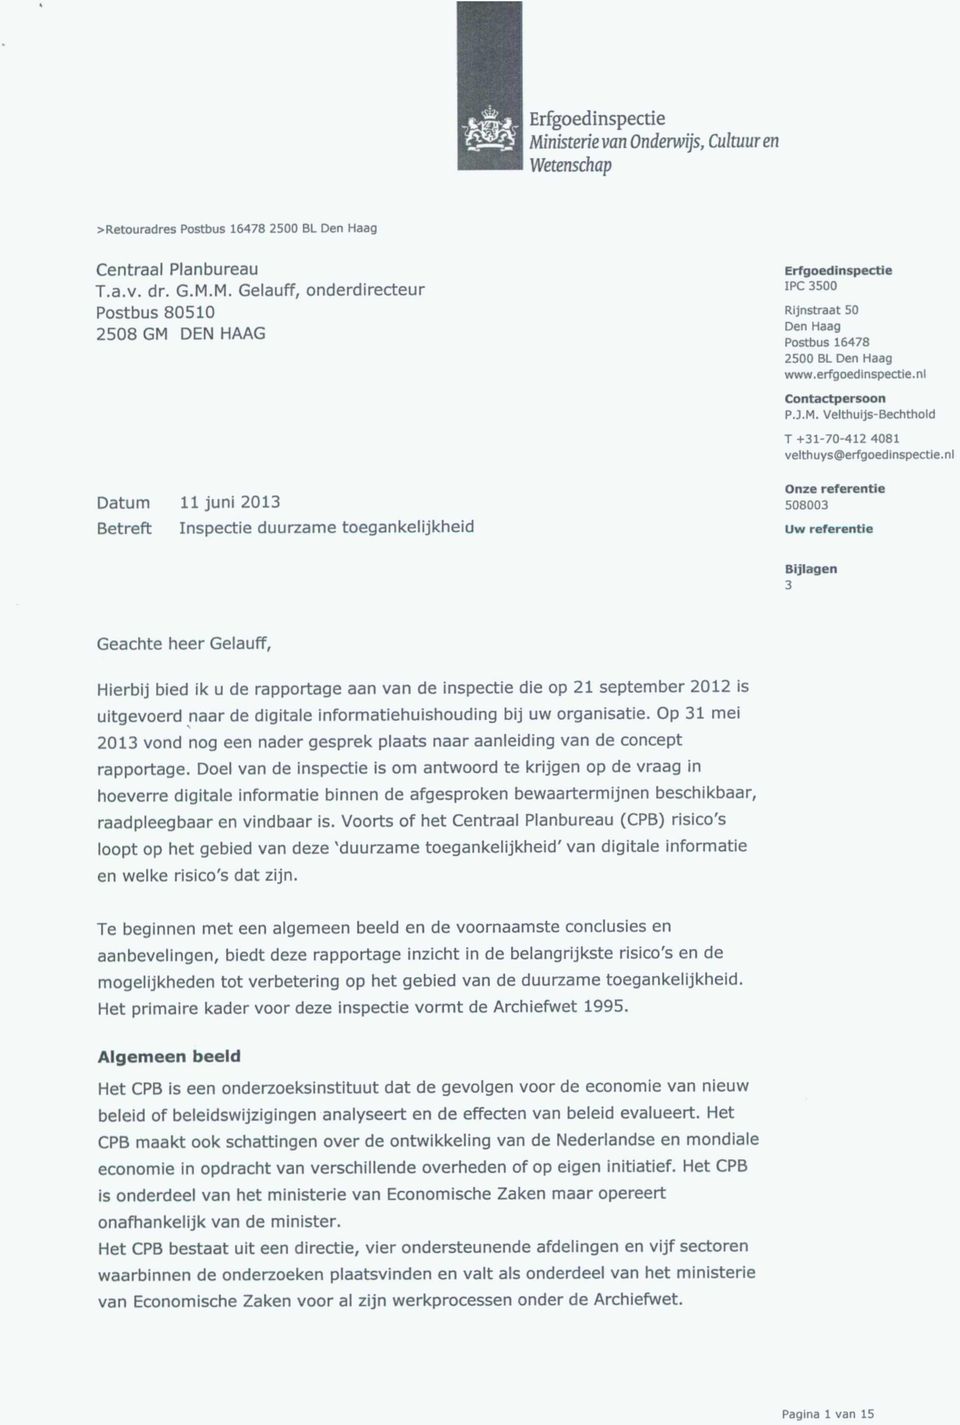 M. Gelauff, onderdirecteur Postbus 80510 2508 GM DEN HAAG Datum 11 juni 2013 Betreft Inspectie duurzame toegankelijkheid Erfgoedinspectie IPC 3500 Rijnstraat 50 Den Haag Postbus 16478 2500 BL Den